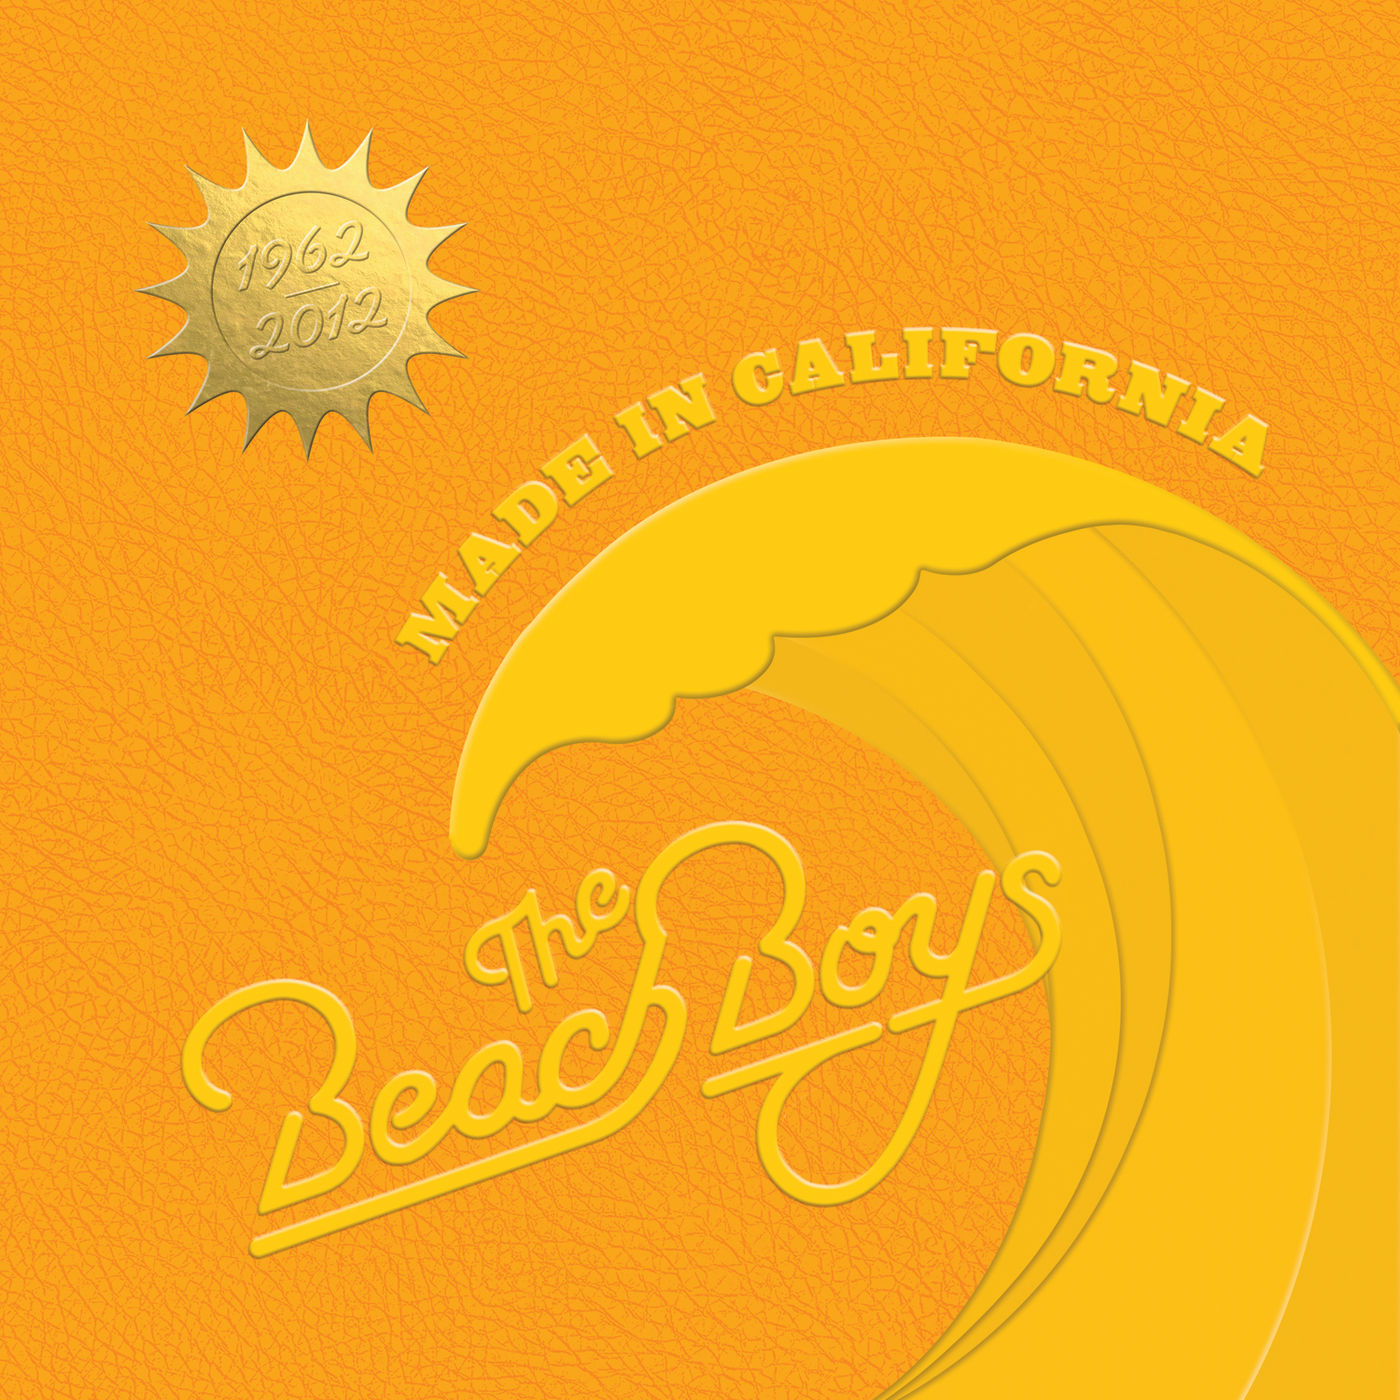 The Beach Boys – Made In California【44.1kHz／16bit】意大利区-OppsUpro音乐帝国